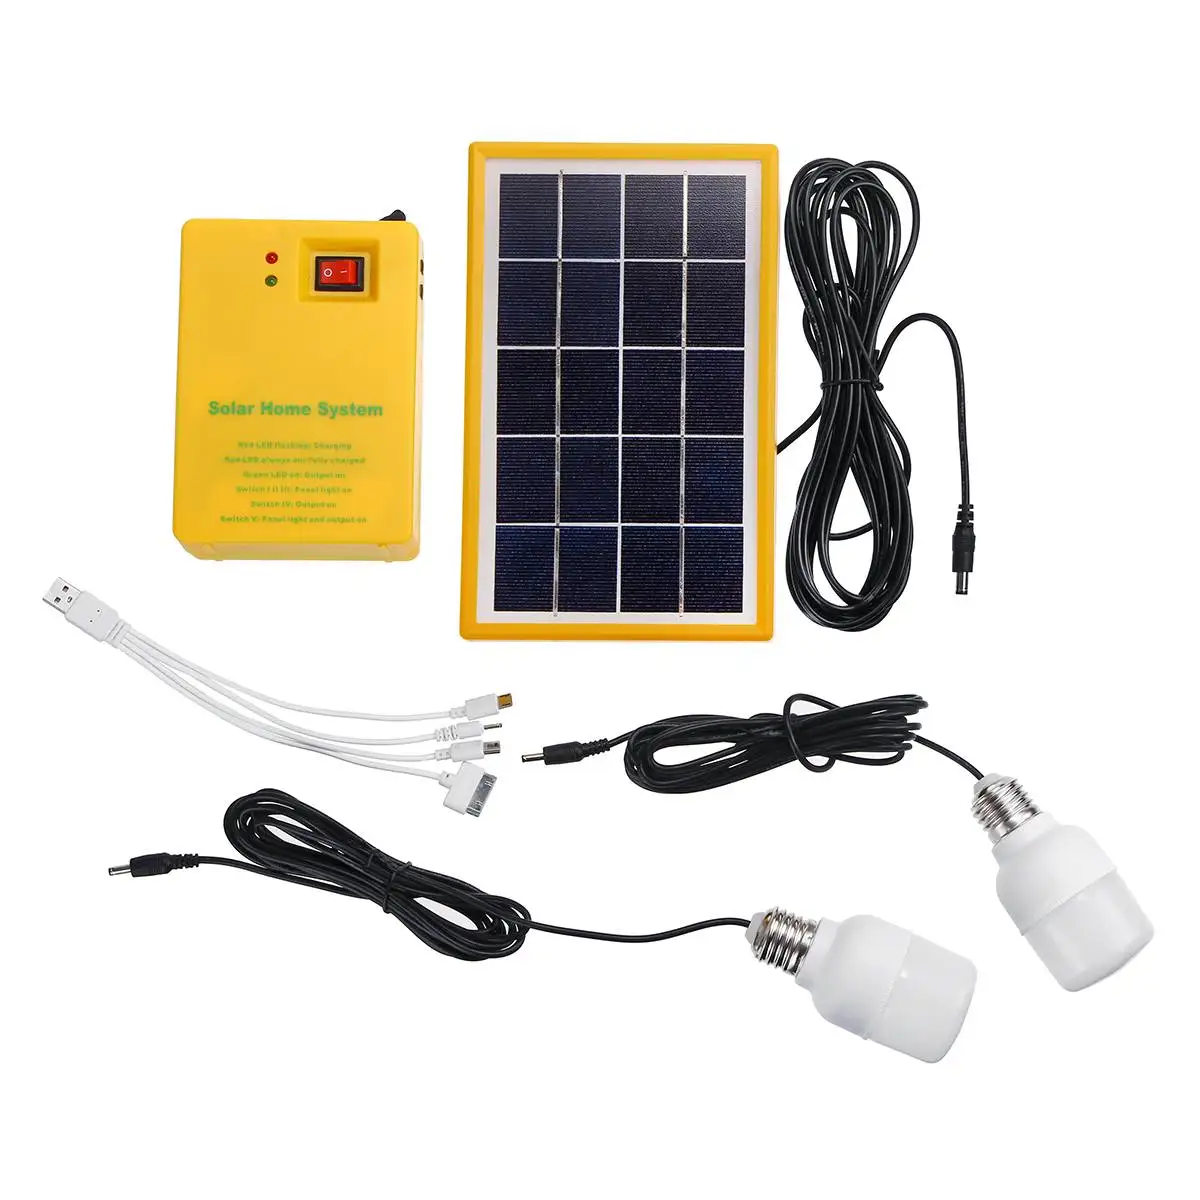 Smuxi портативная солнечная панель генератор питания светодиодный светильник на солнечной батарее с 2 лампами 3 передач затемнение USB зарядка